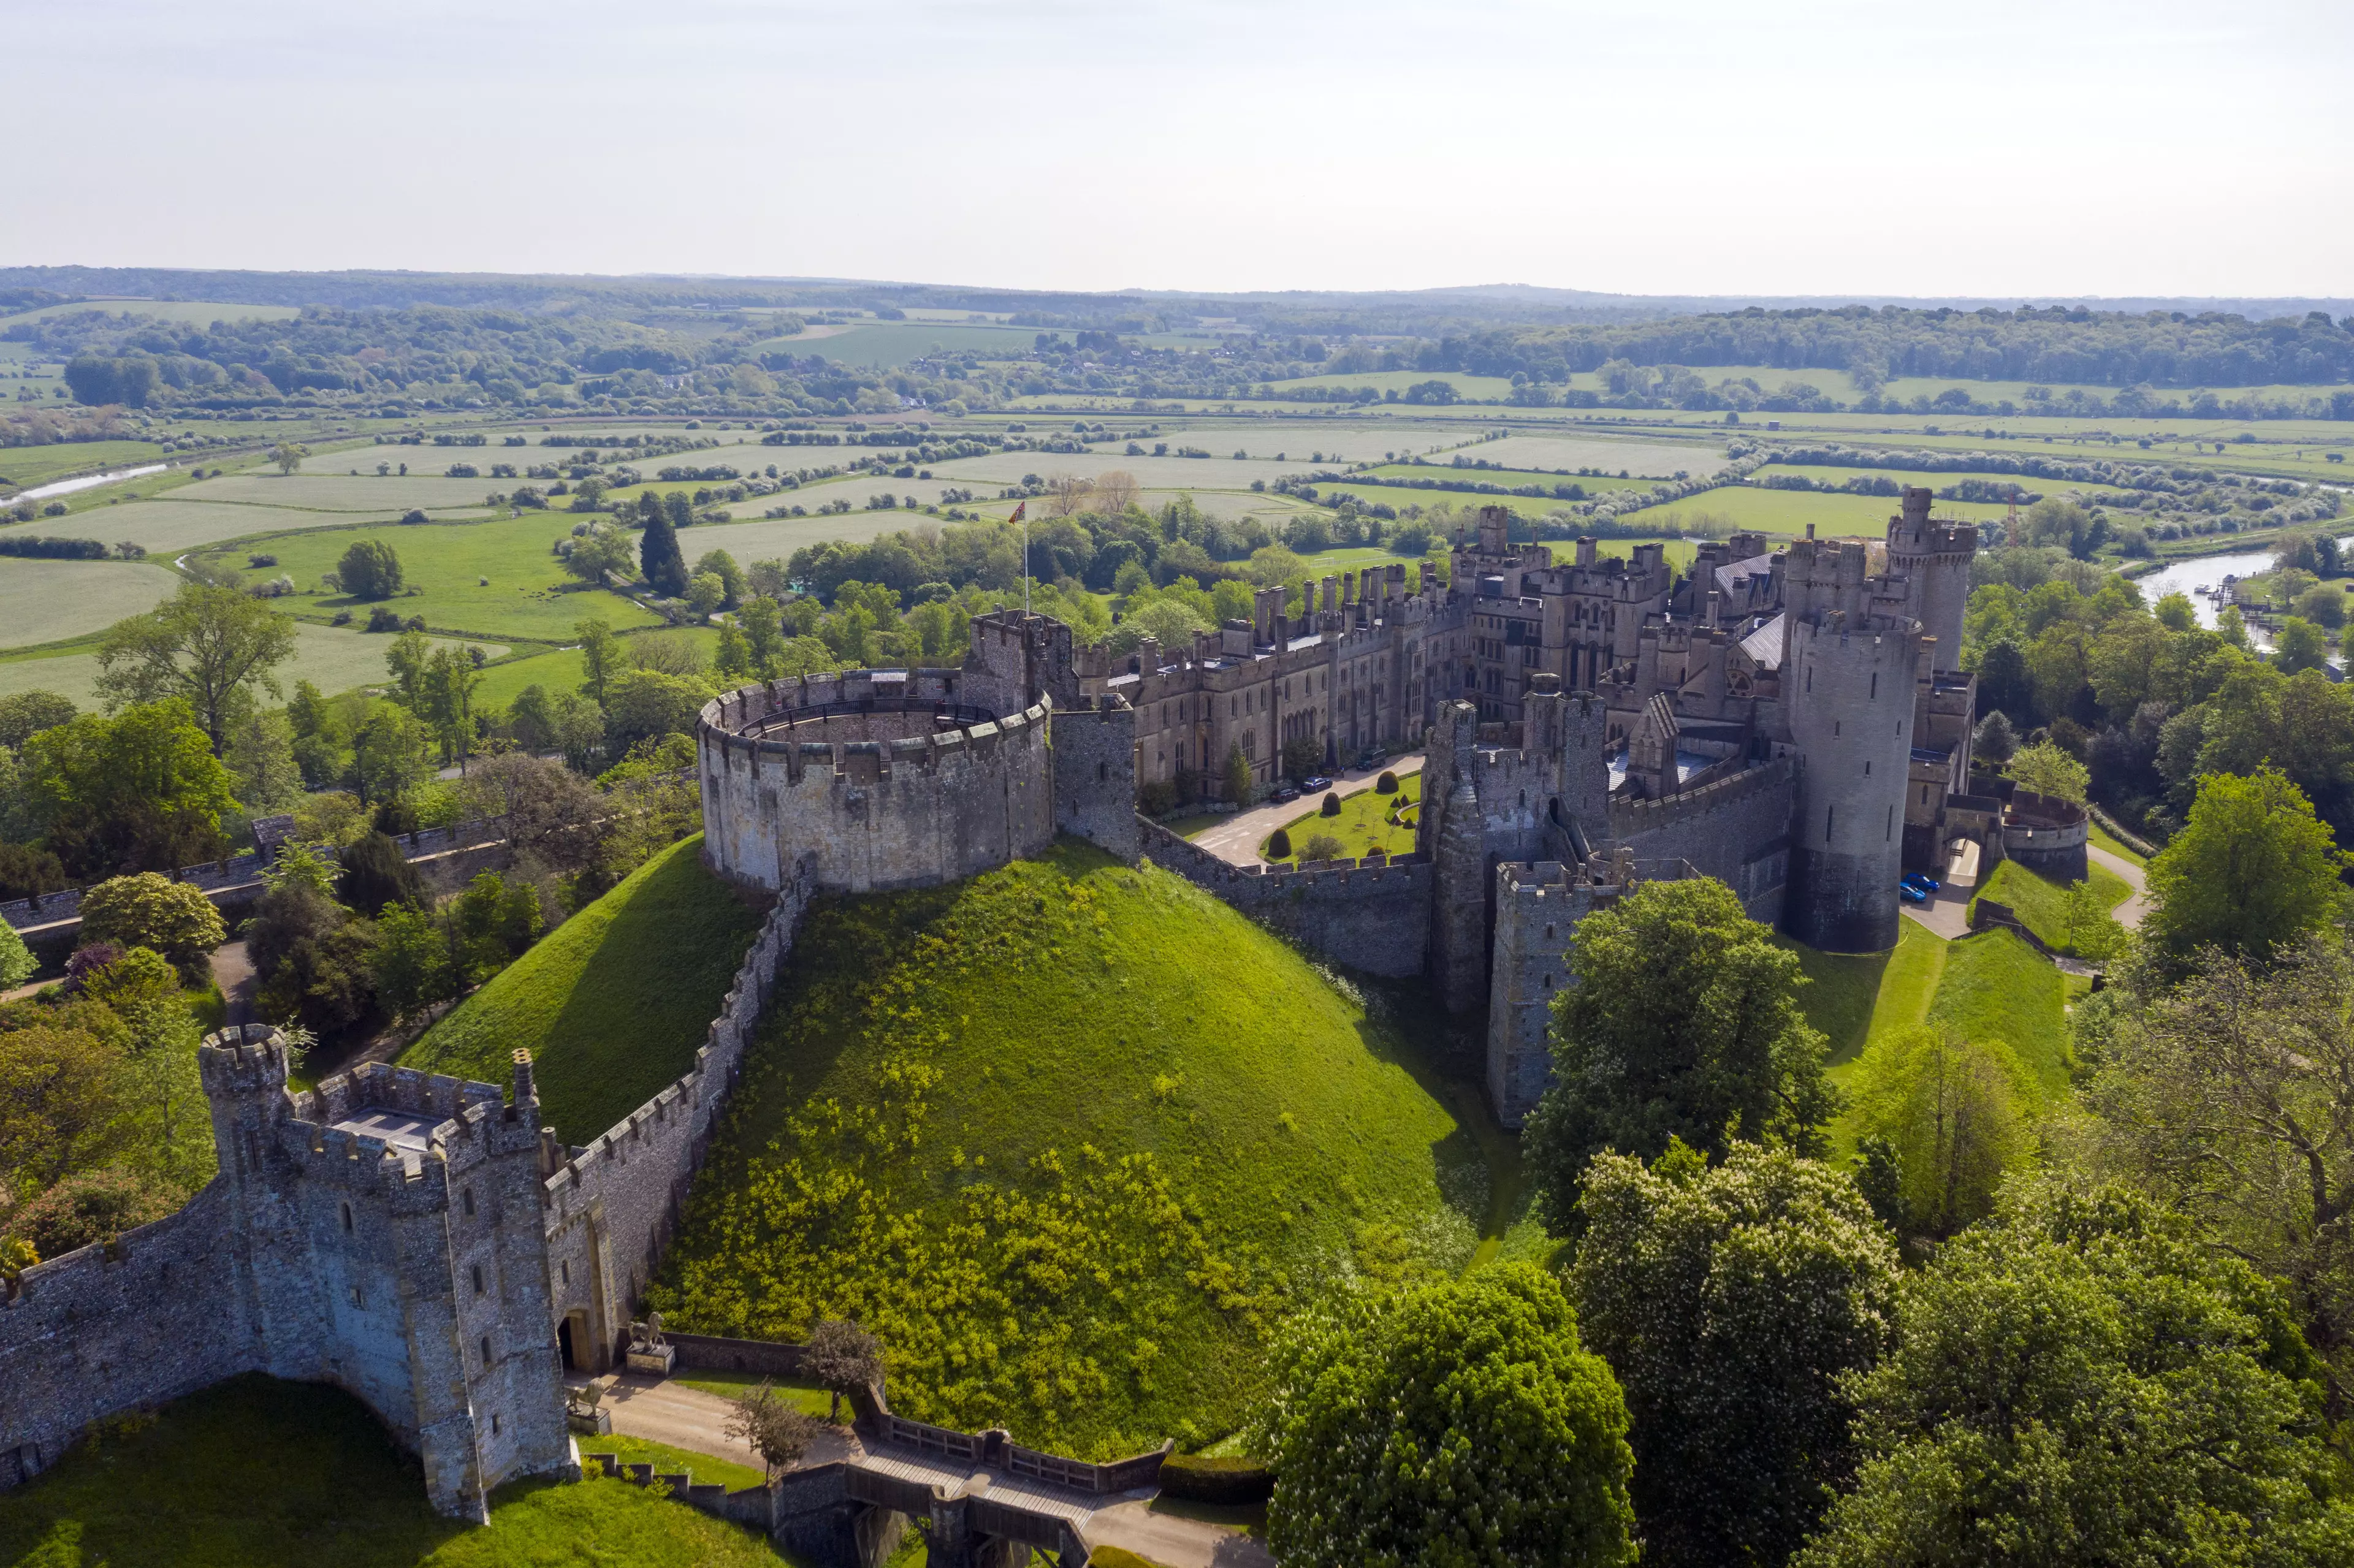 Tourism hotspots like Arundel Castle have been deserted.